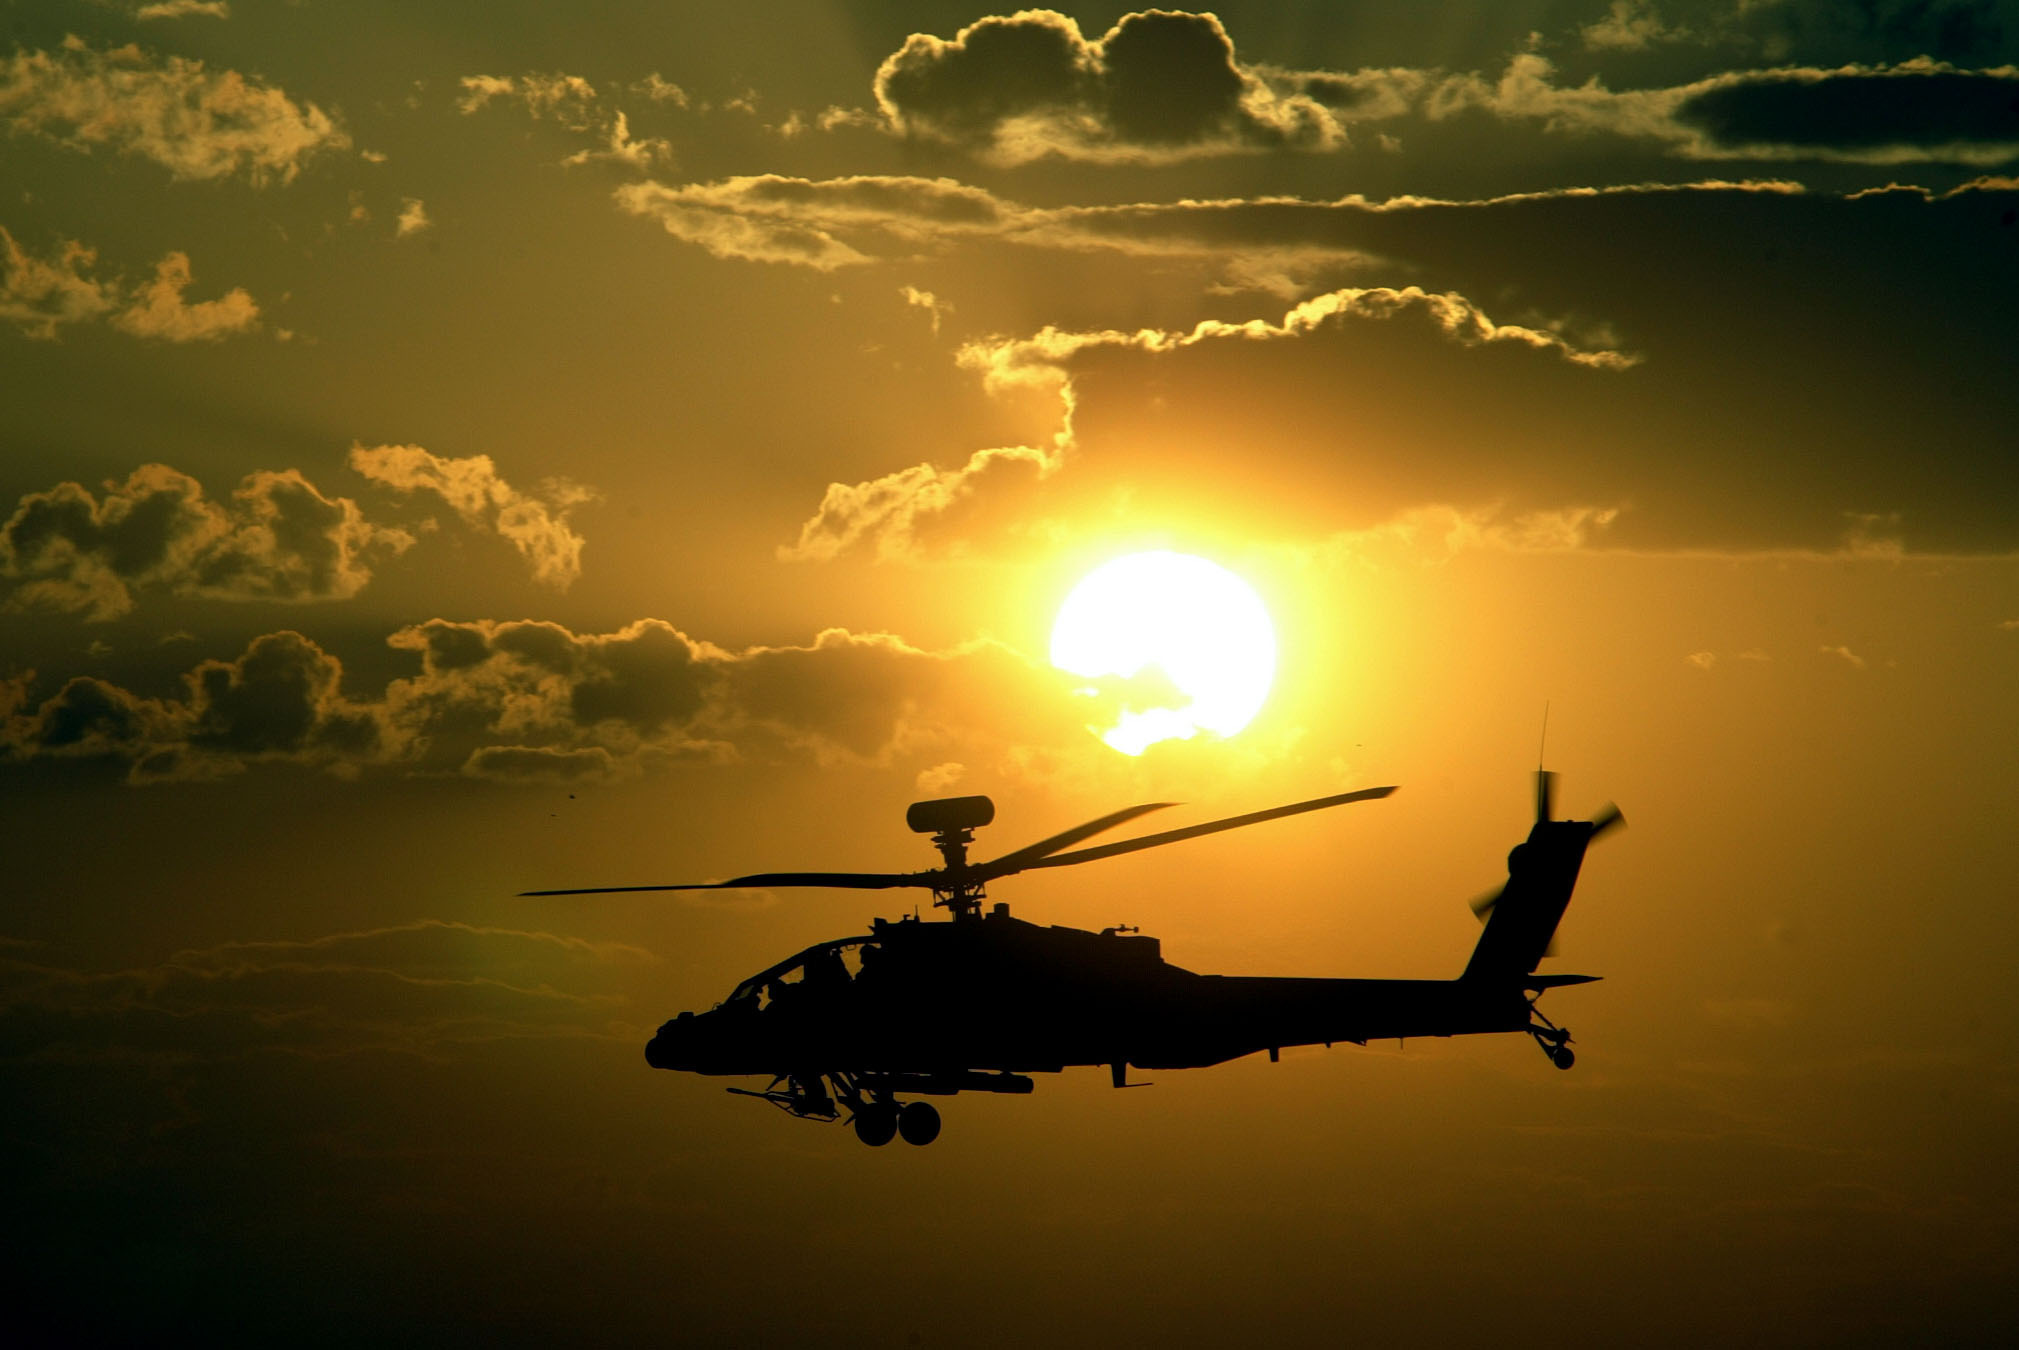 Обои военная тематика. Апачи вертолет. Ah-64 Apache в небе. Военный вертолет. Военная тематика.